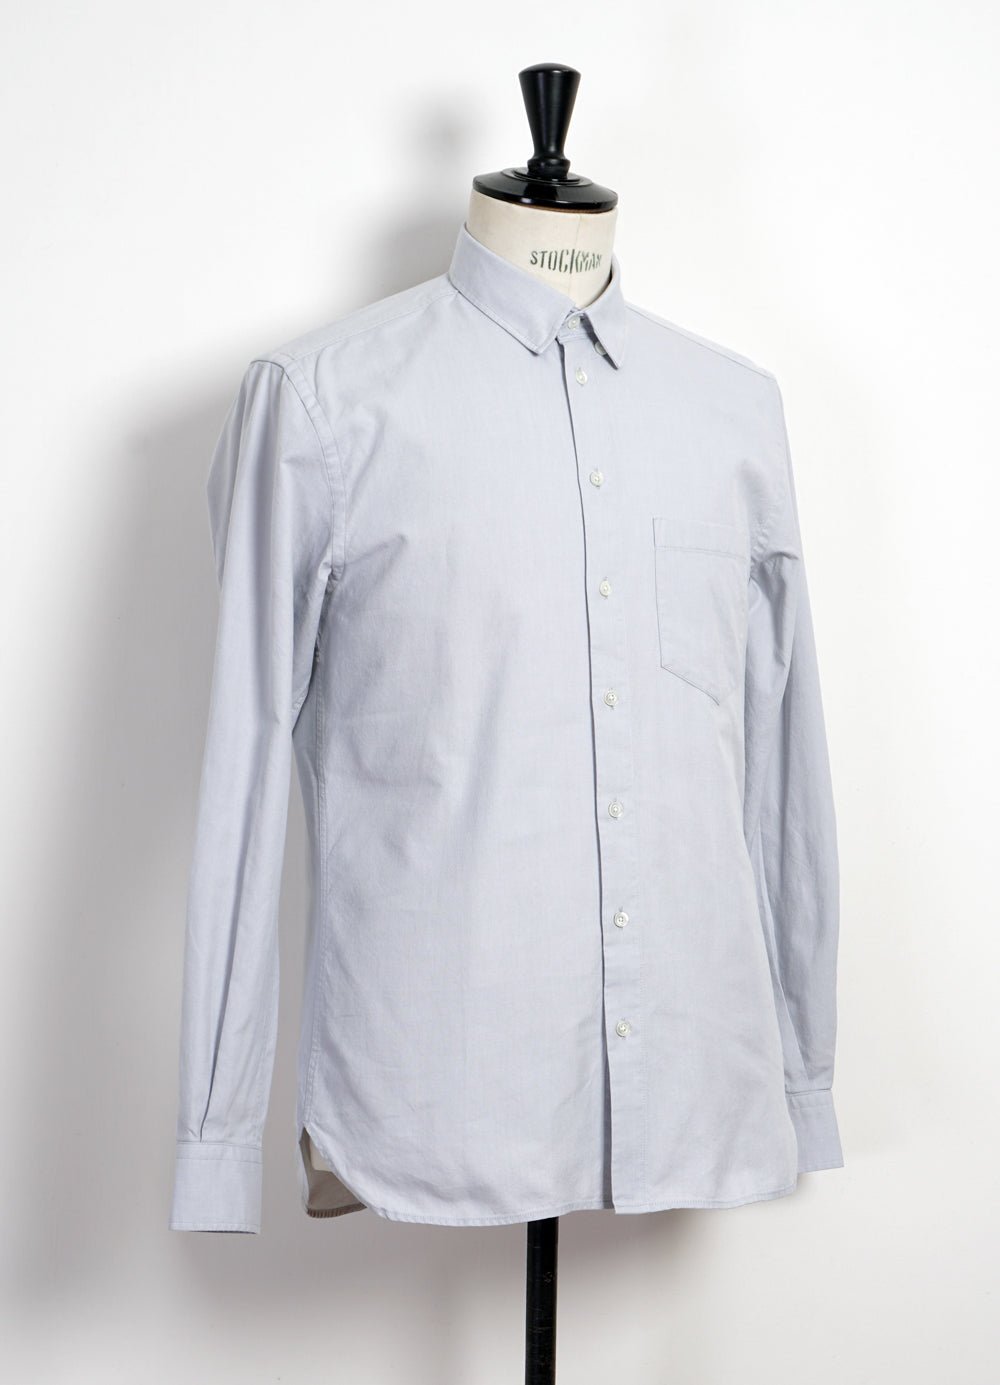 HANSEN Garments - HAAKON | Hidden Button Down Shirt | Silver - HANSEN Garments